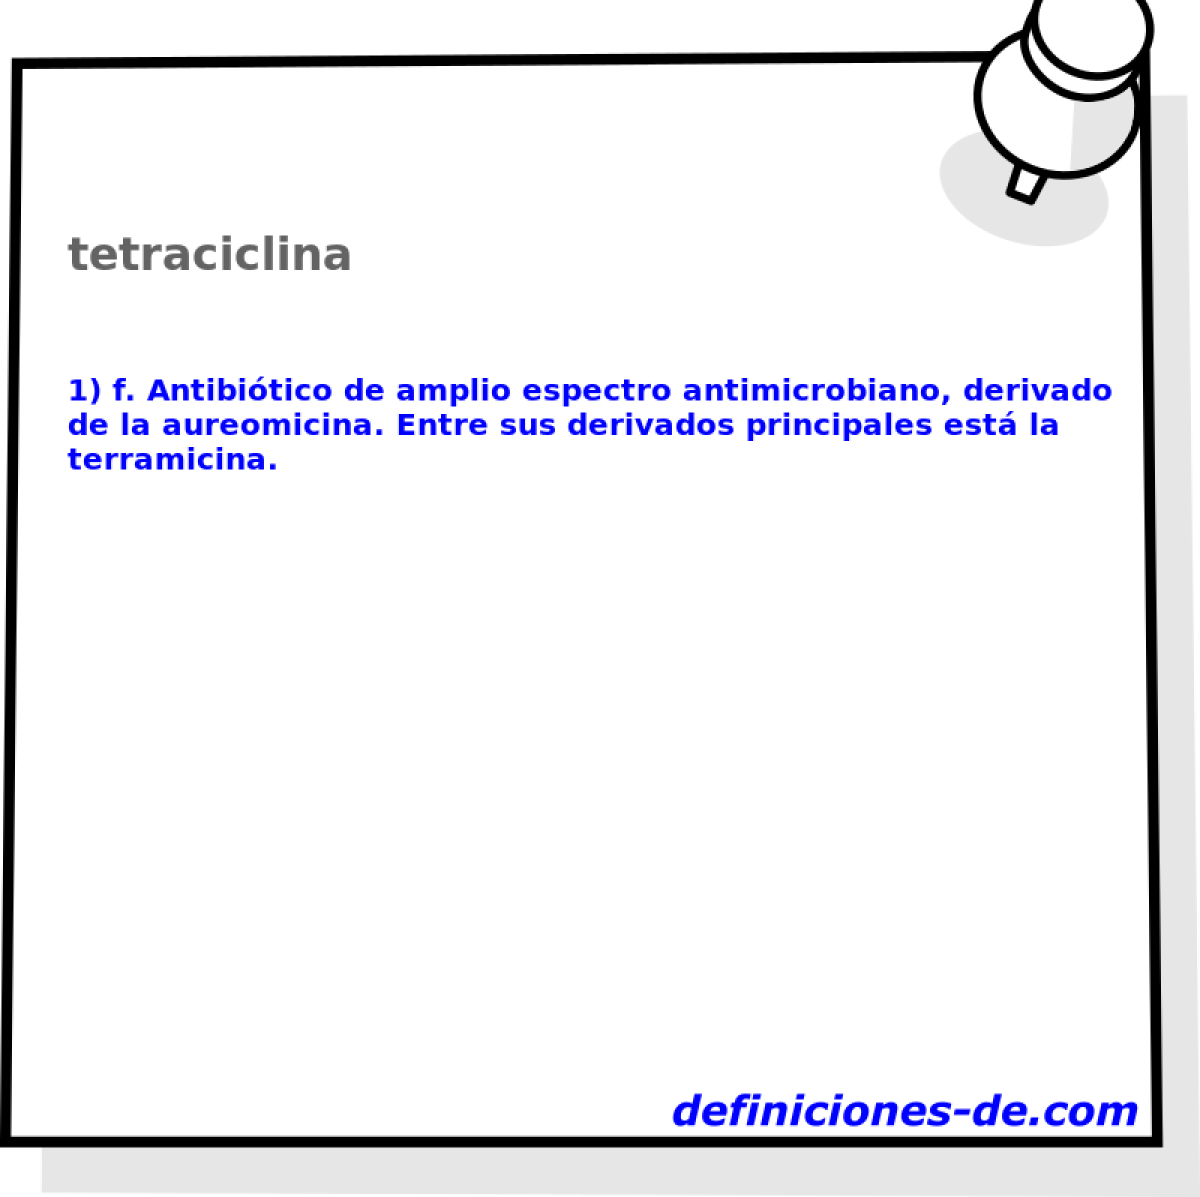 tetraciclina 